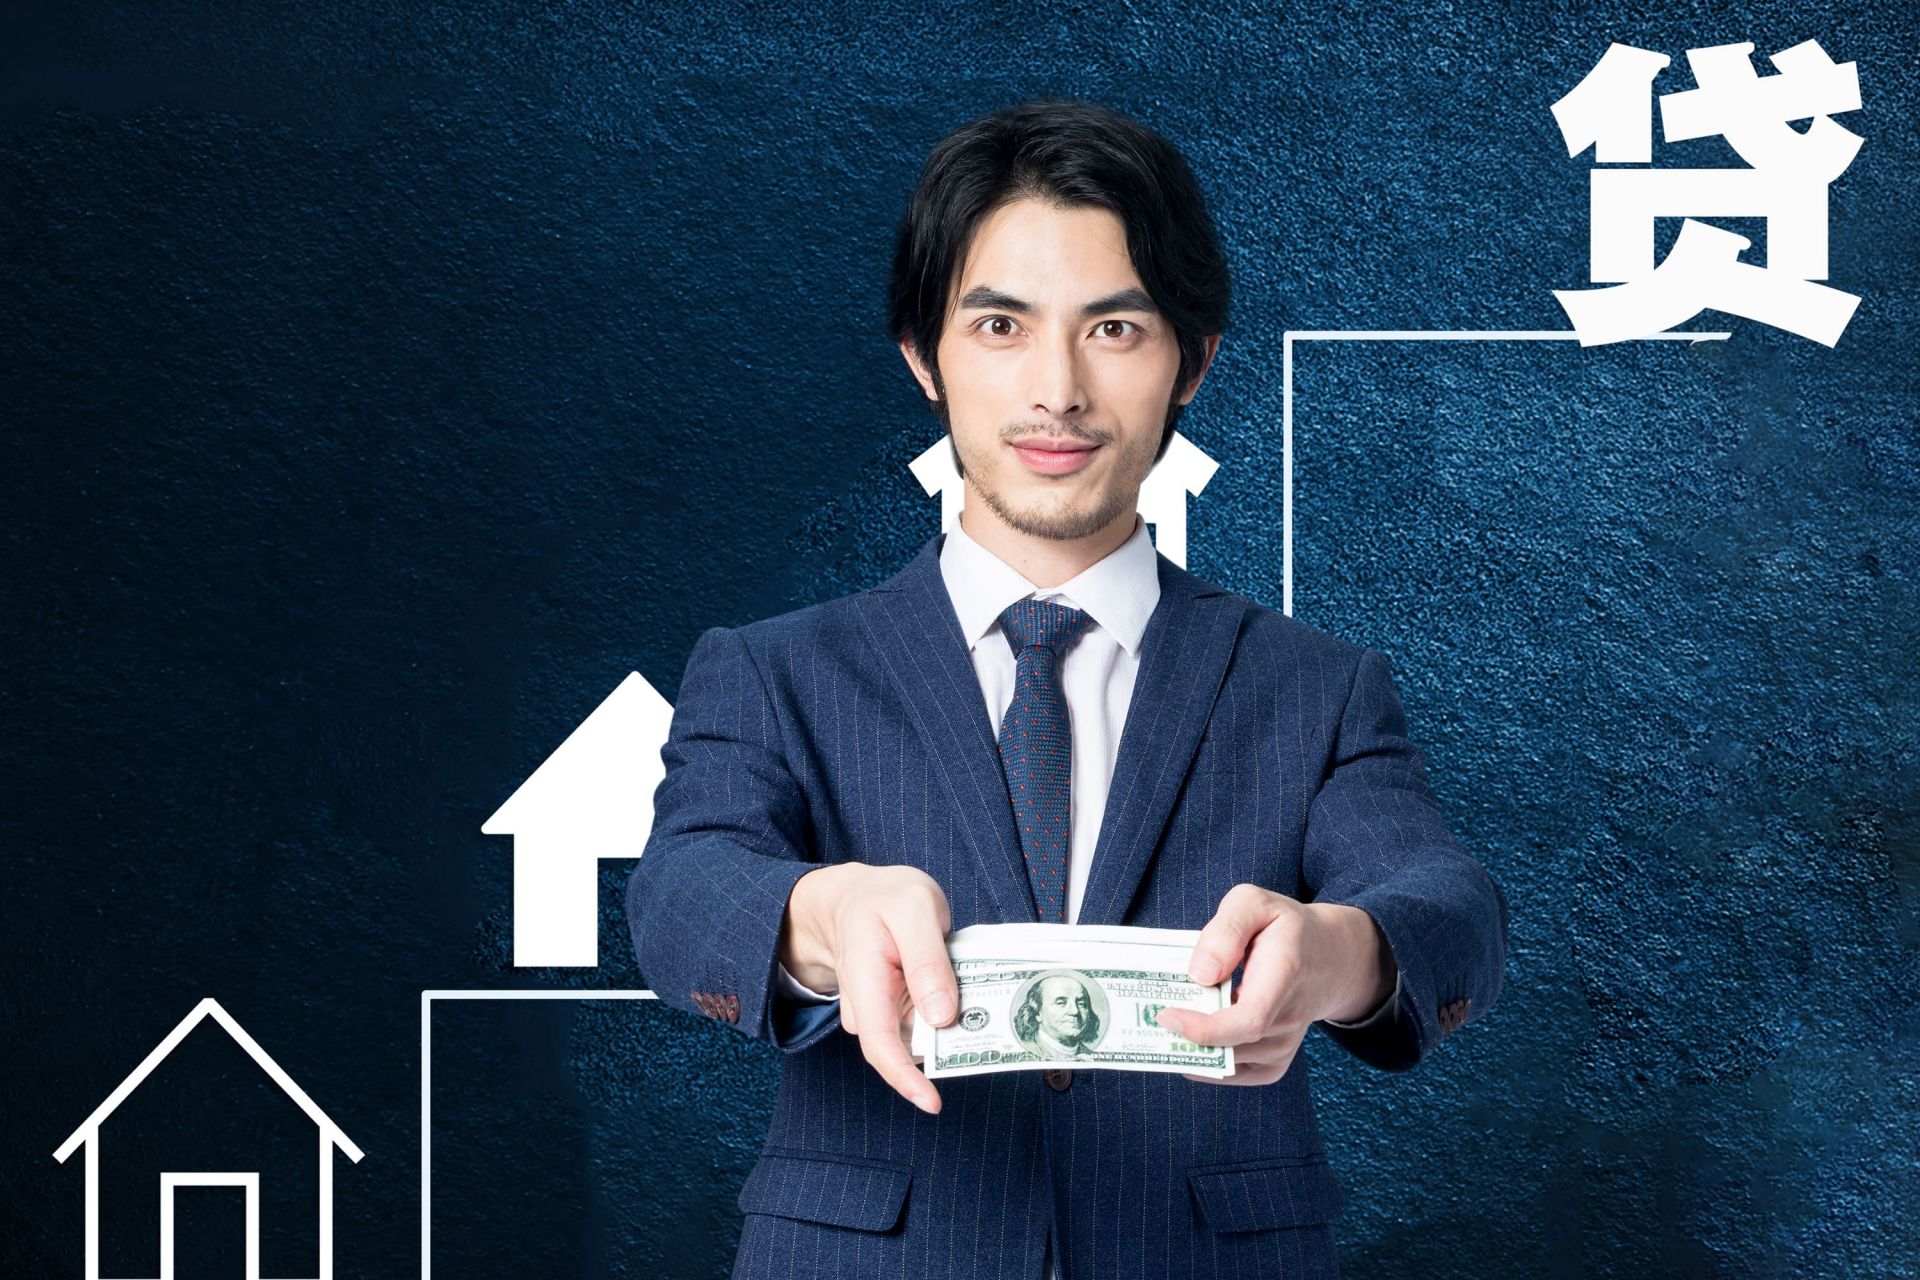 民間借款整理甚麼資料會根據客戶提供的代償房貸